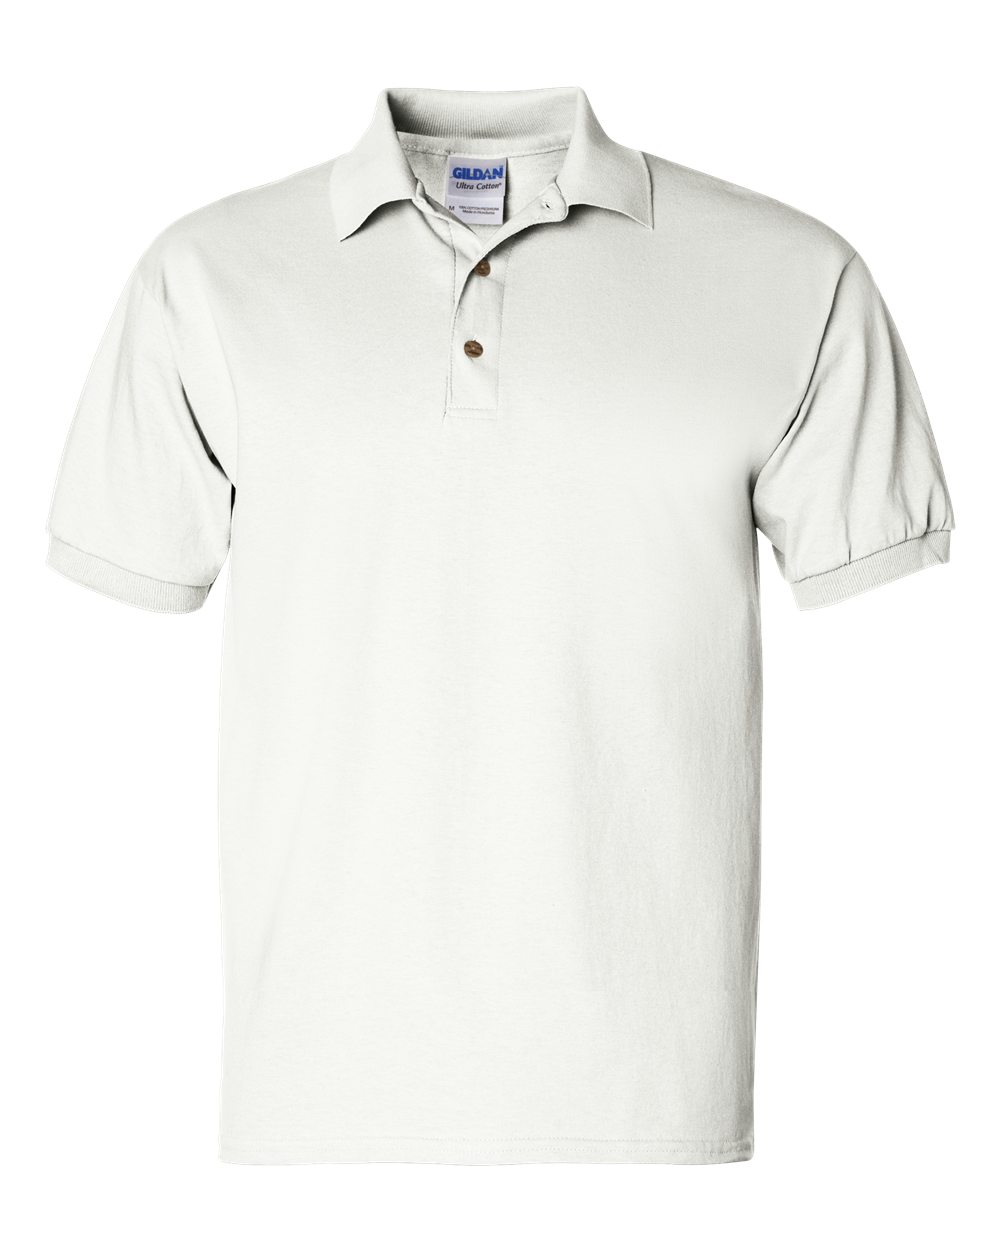 Gildan 2800  Ultra Cotton Jersey Sport Shirt